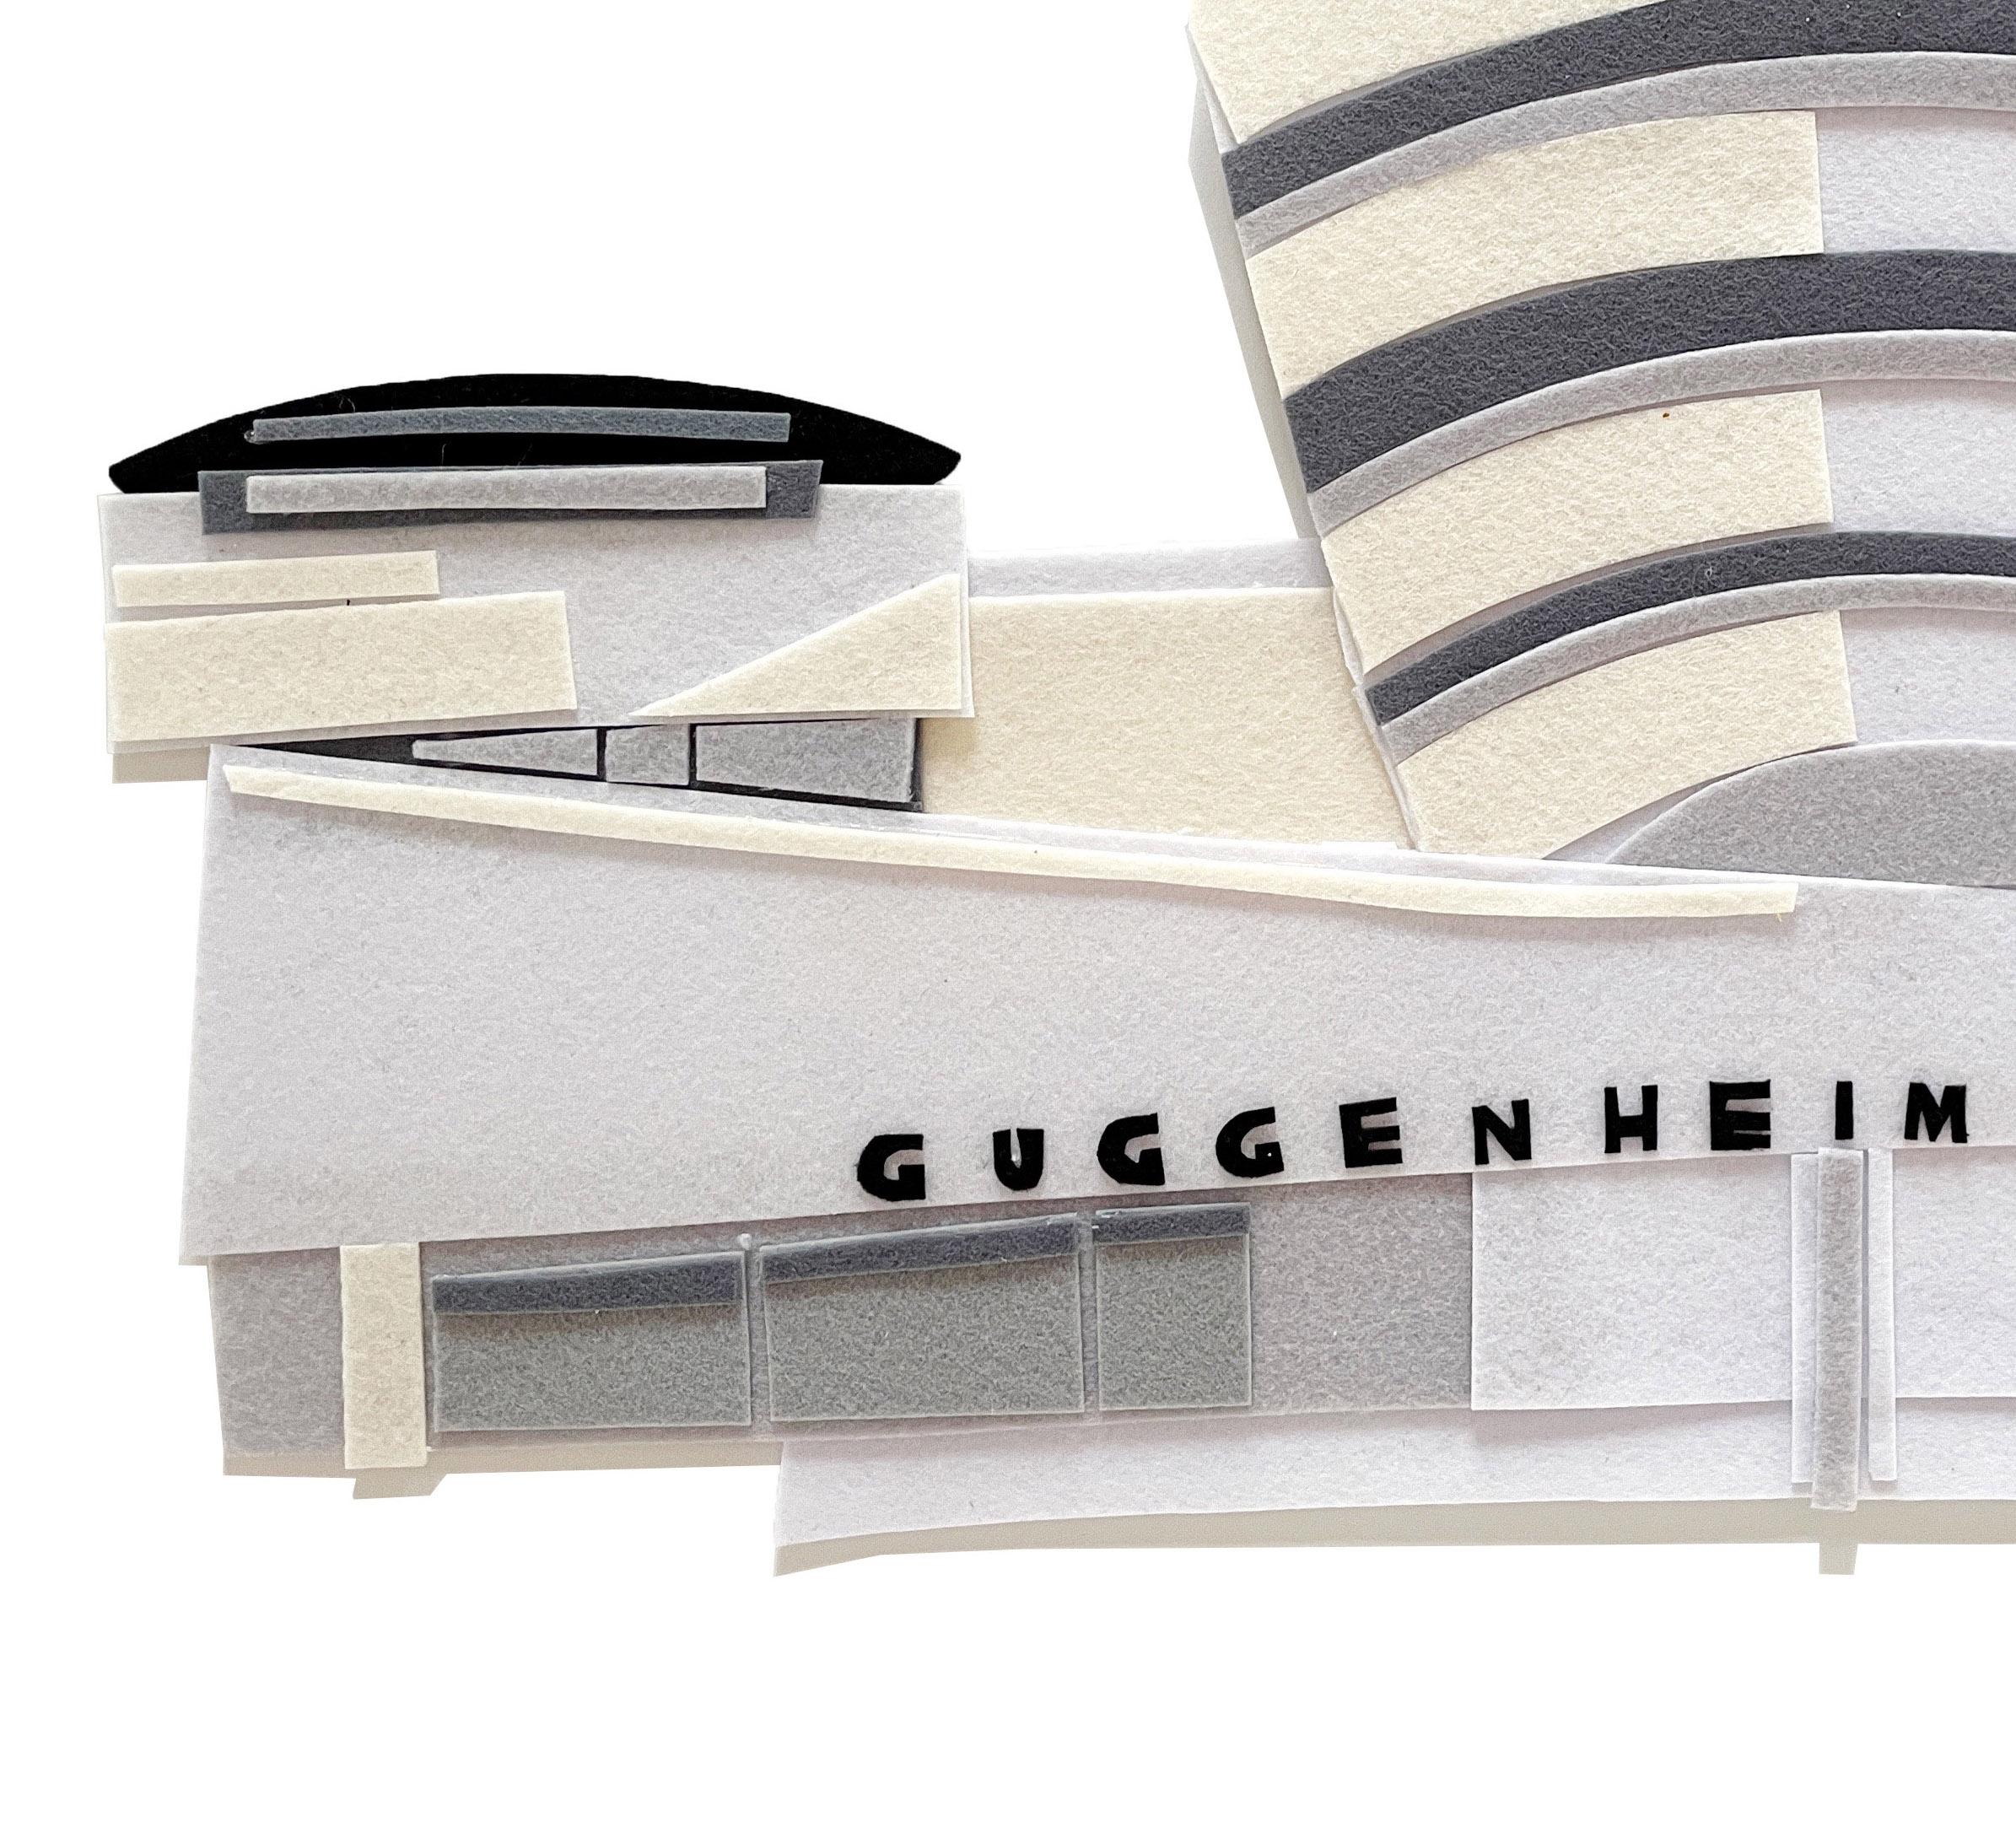 The Guggenheim Museum - Pop Art Art by Sam Sidney